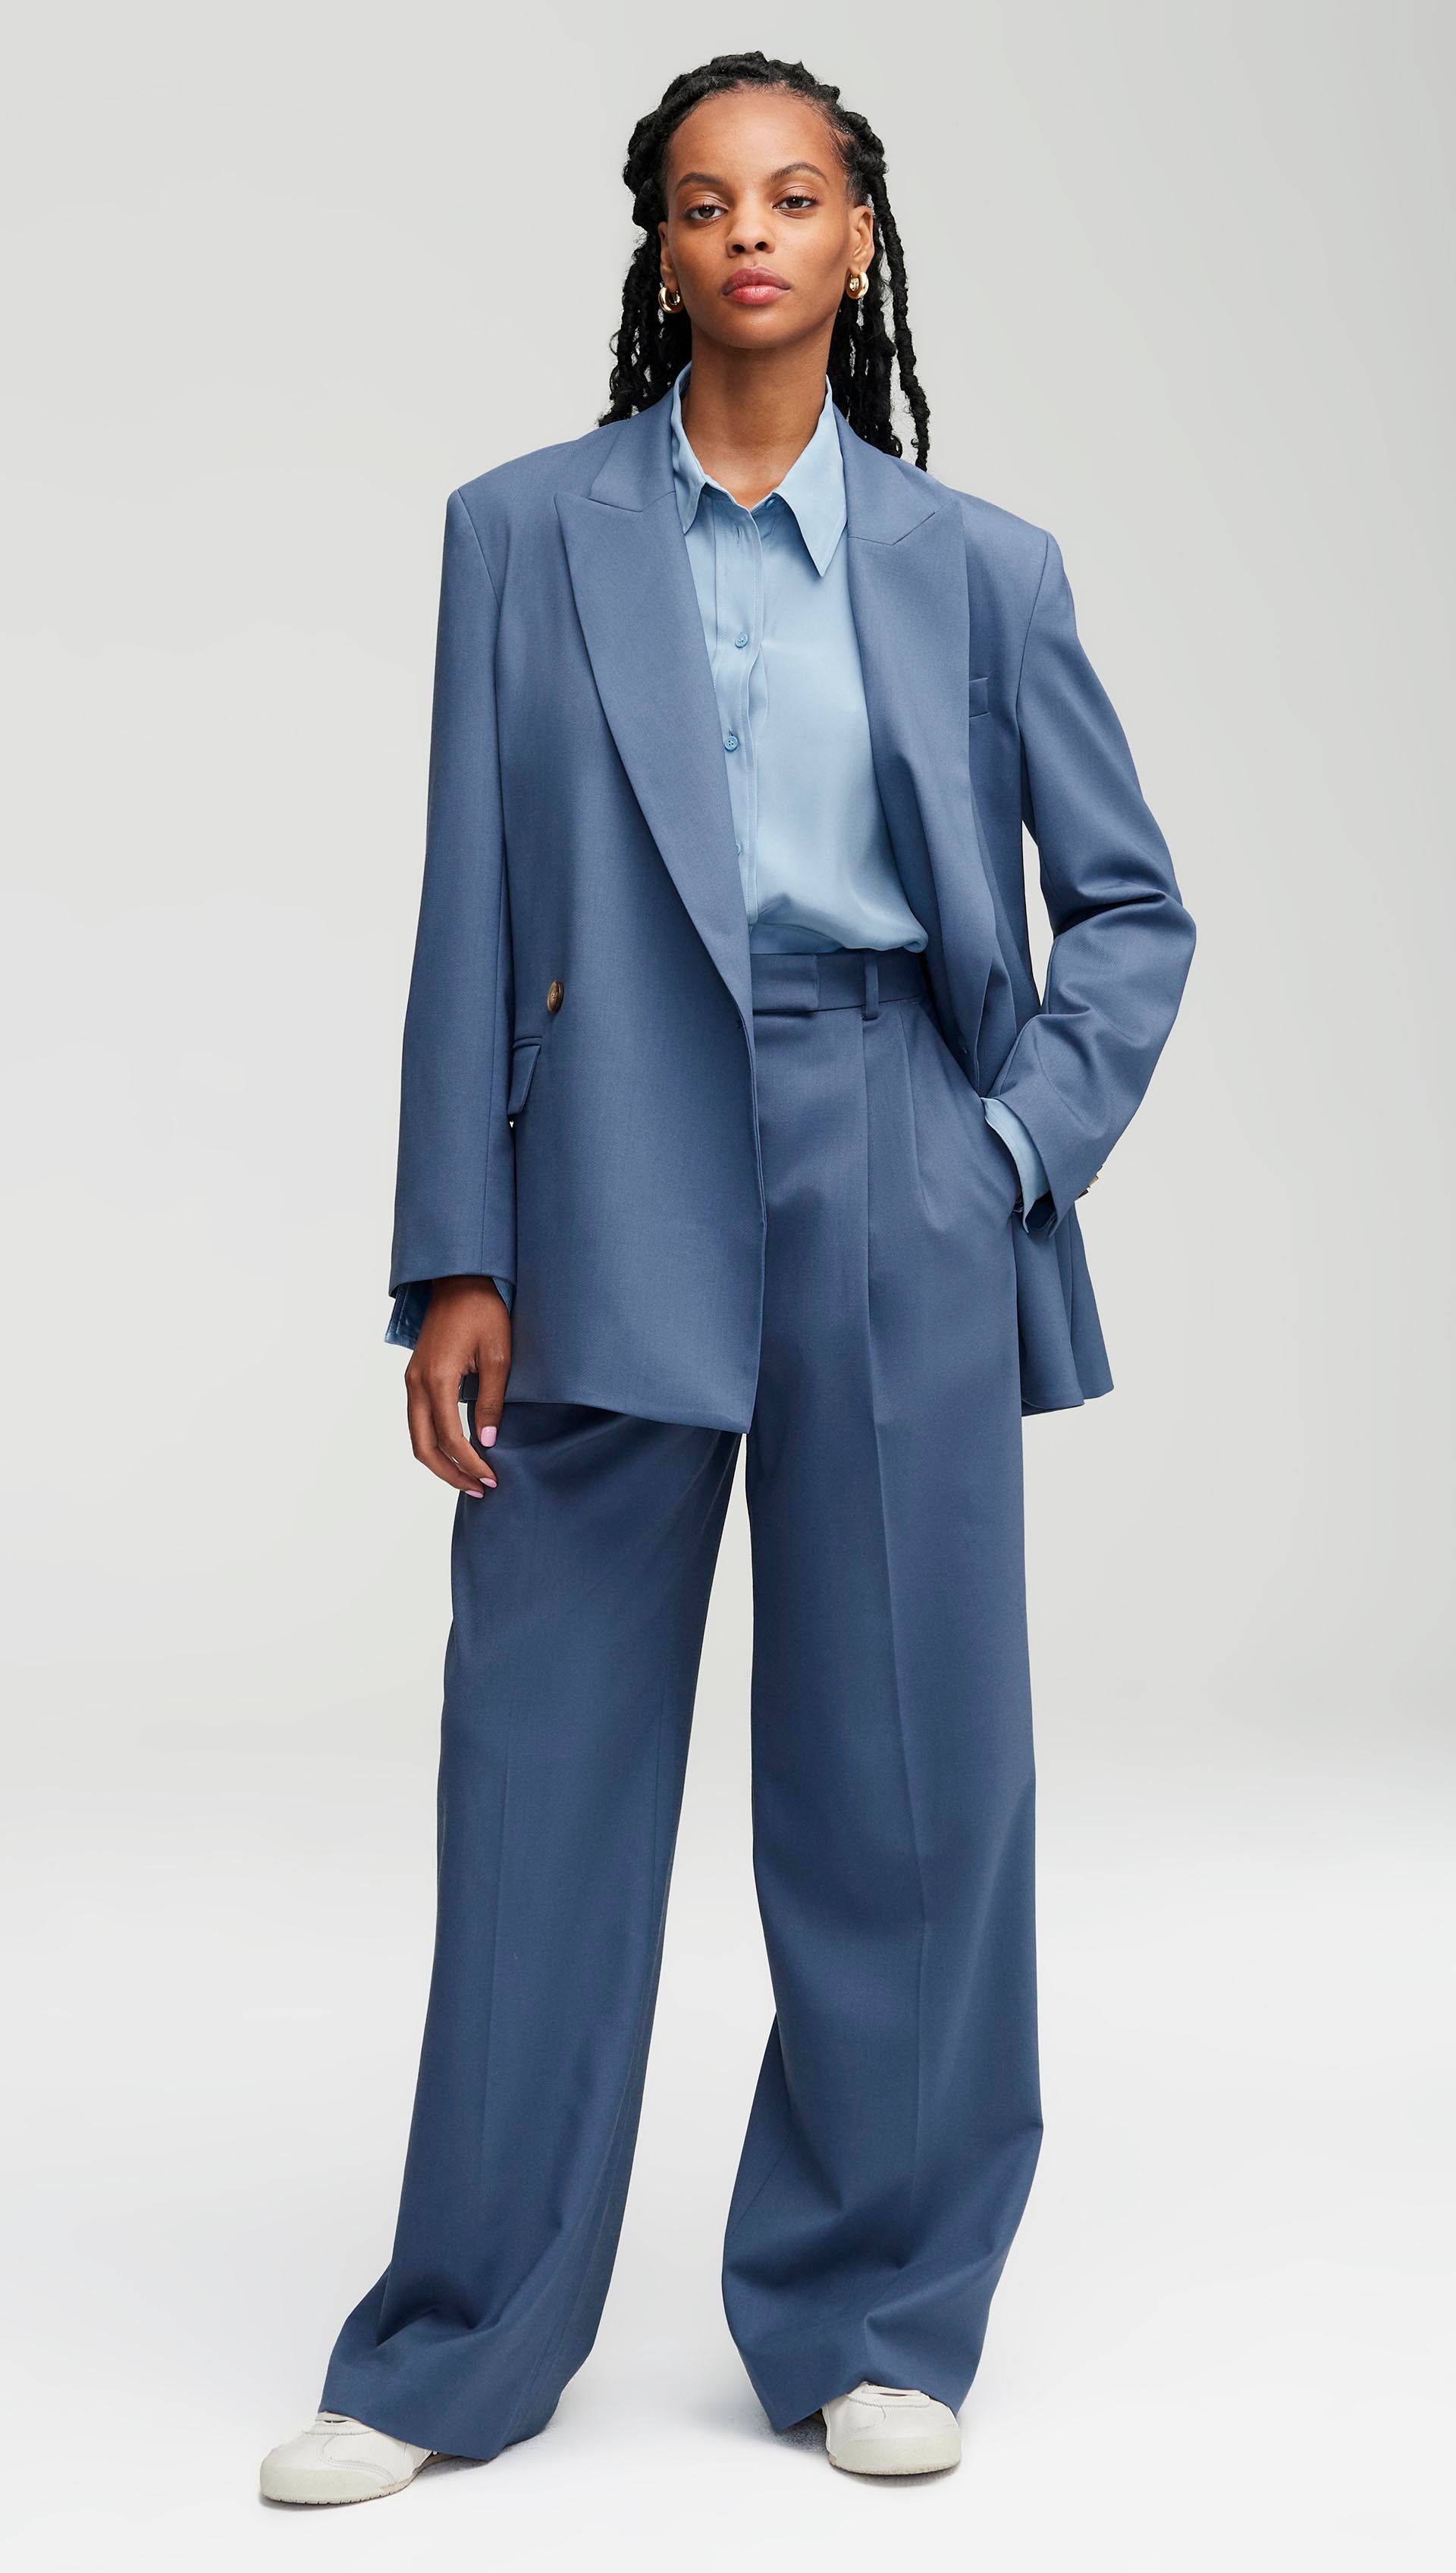 Blazer and Pants Set Women 2 Piece Tuxedo Suit Office Business Women Pant  Suits : : Clothing, Shoes & Accessories